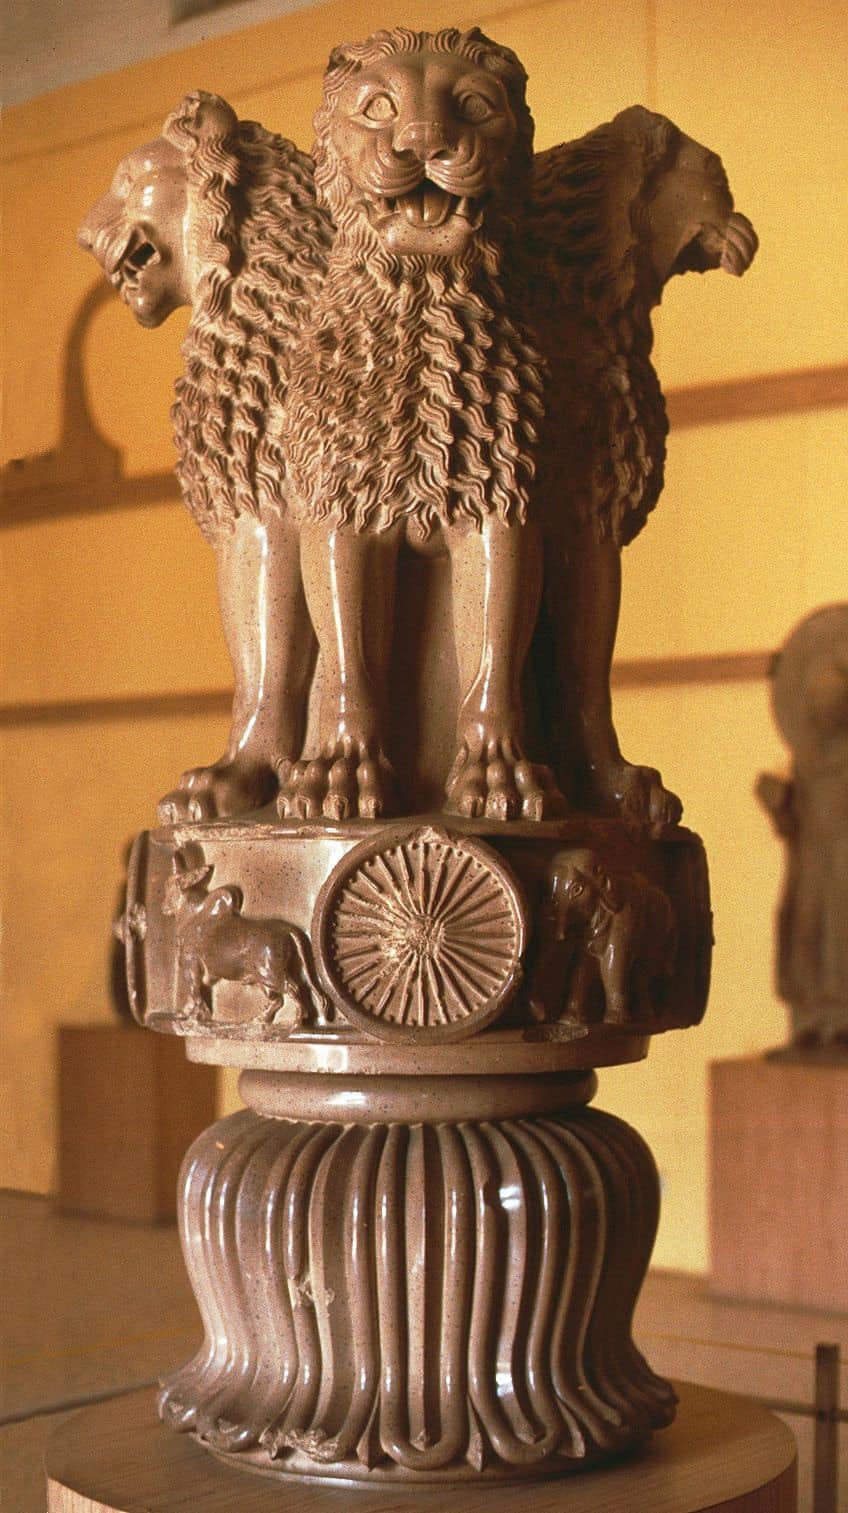 Arte indiana - Descubra a história e a influência da arte indiana antiga